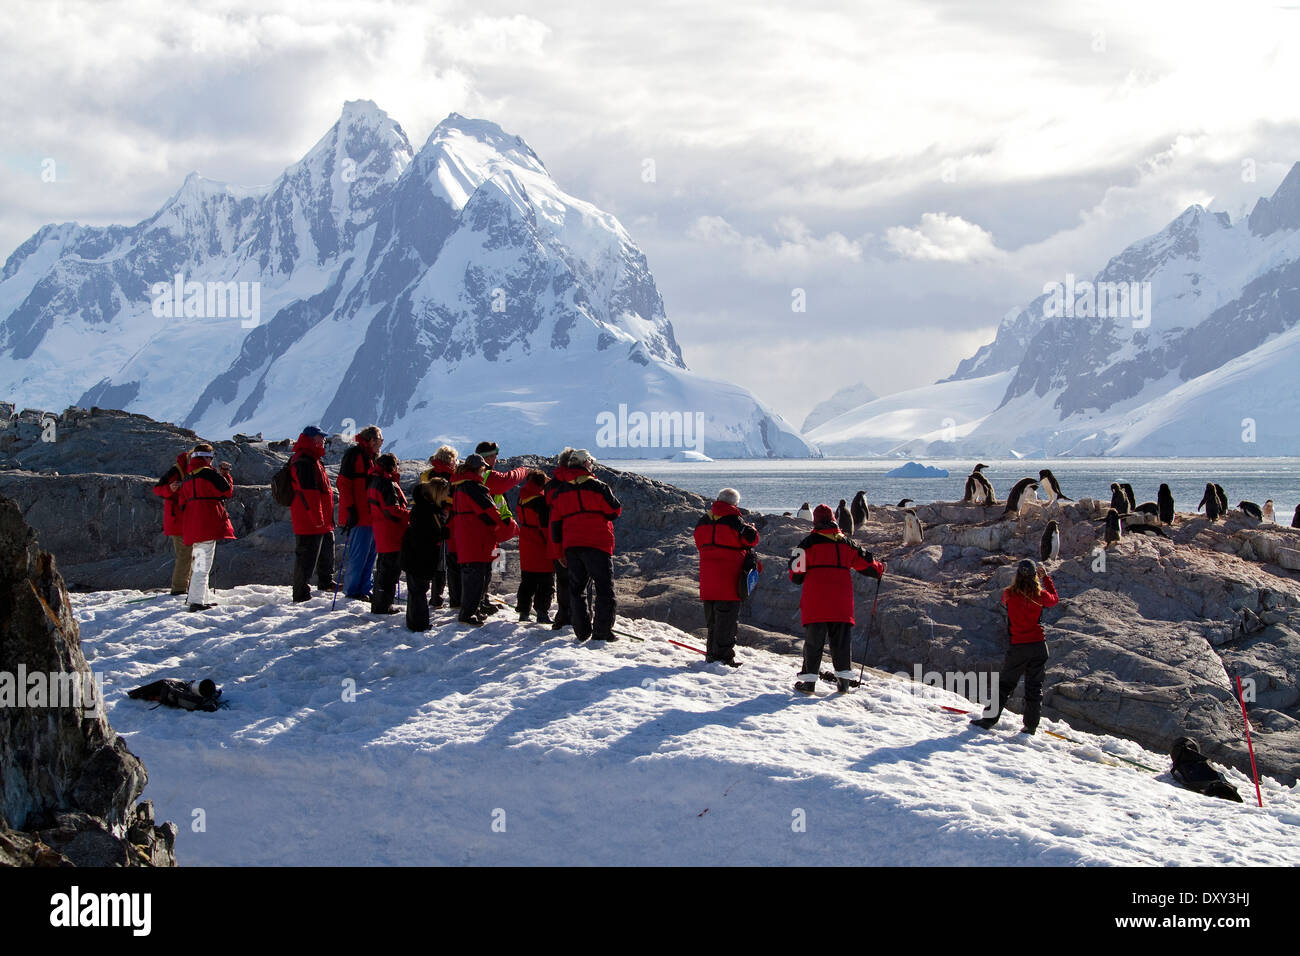 Antarktis Tourismus mit Kreuzfahrt-Passagiere anzeigen, antarktische Pinguine und Berg, Landschaft Berge. Stockfoto